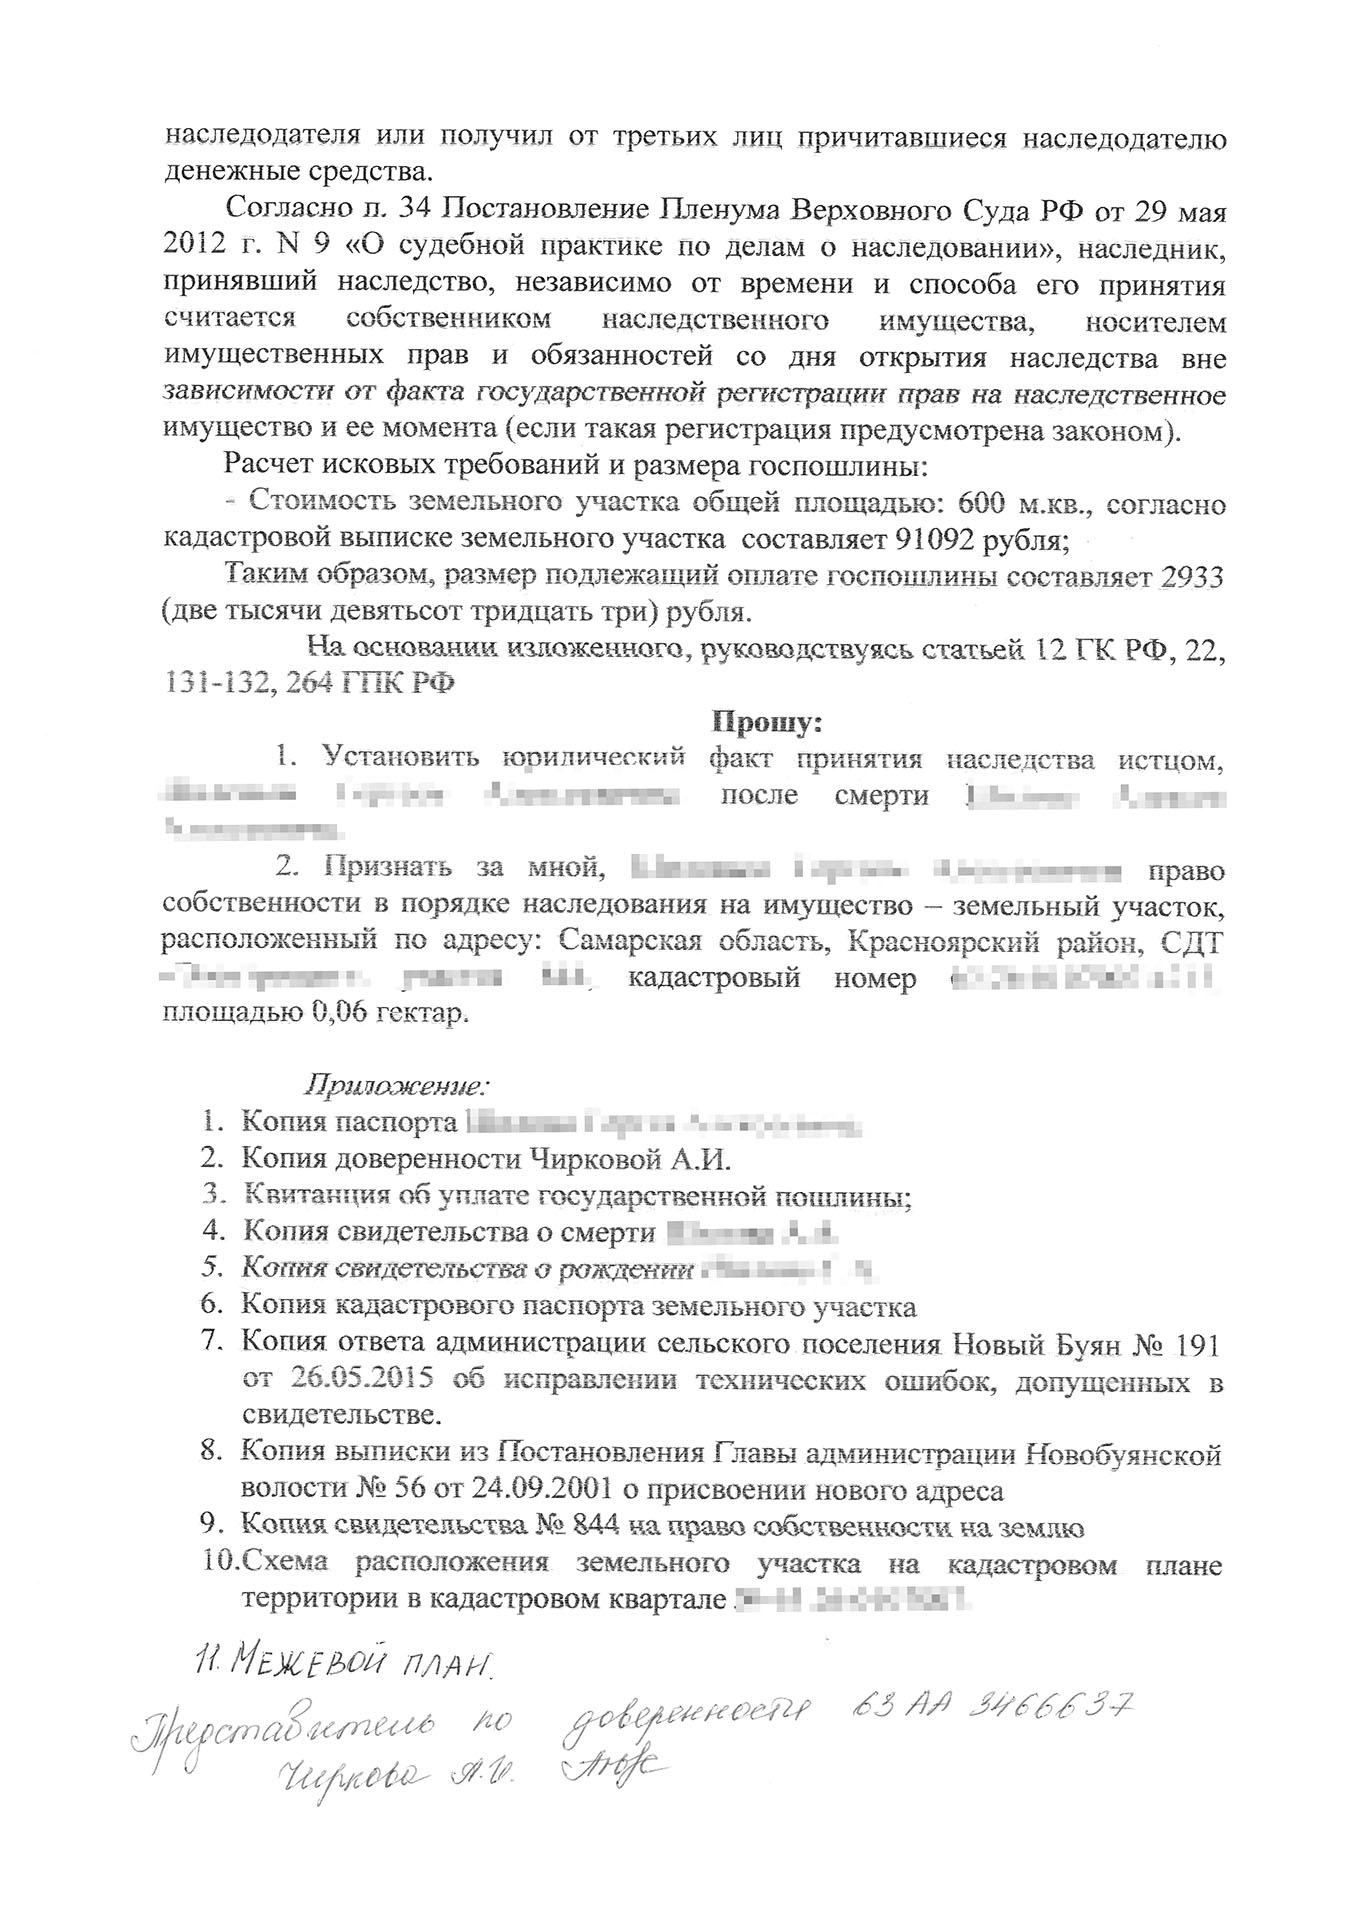 Договор обмена услуг на товар Тихомирова Н.В.